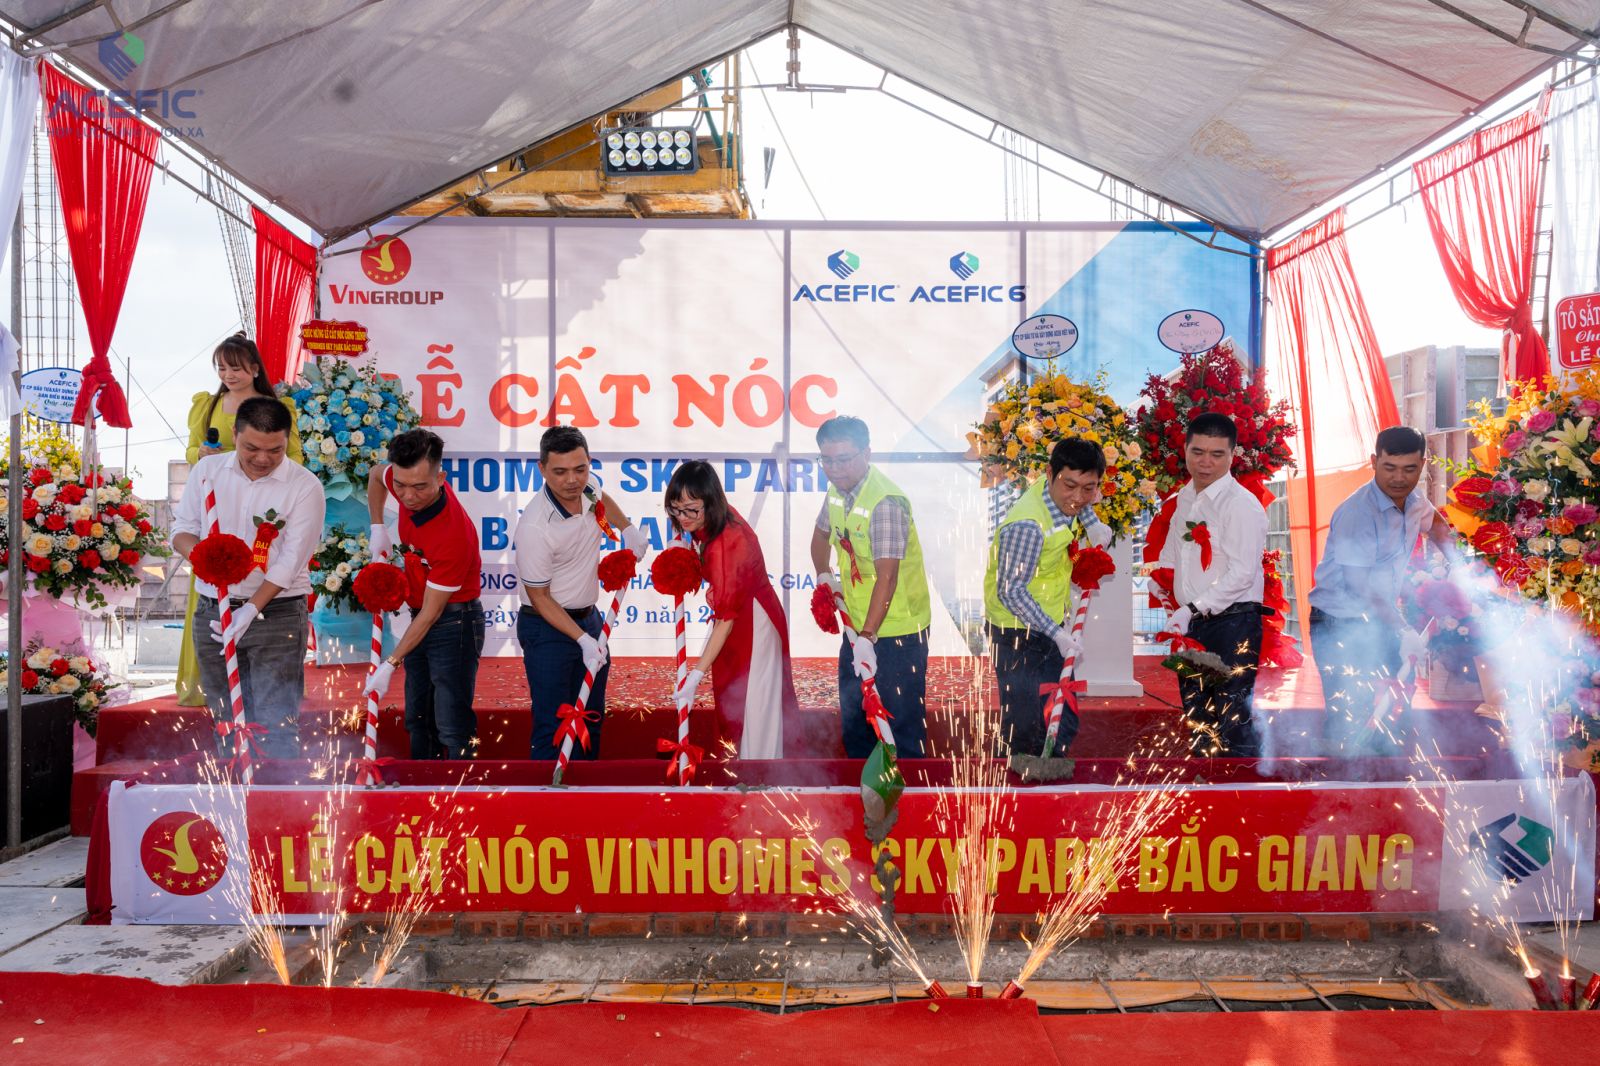 ACEFIC lễ cất nóc dự án Vinhomes Sky Park Bắc Giang